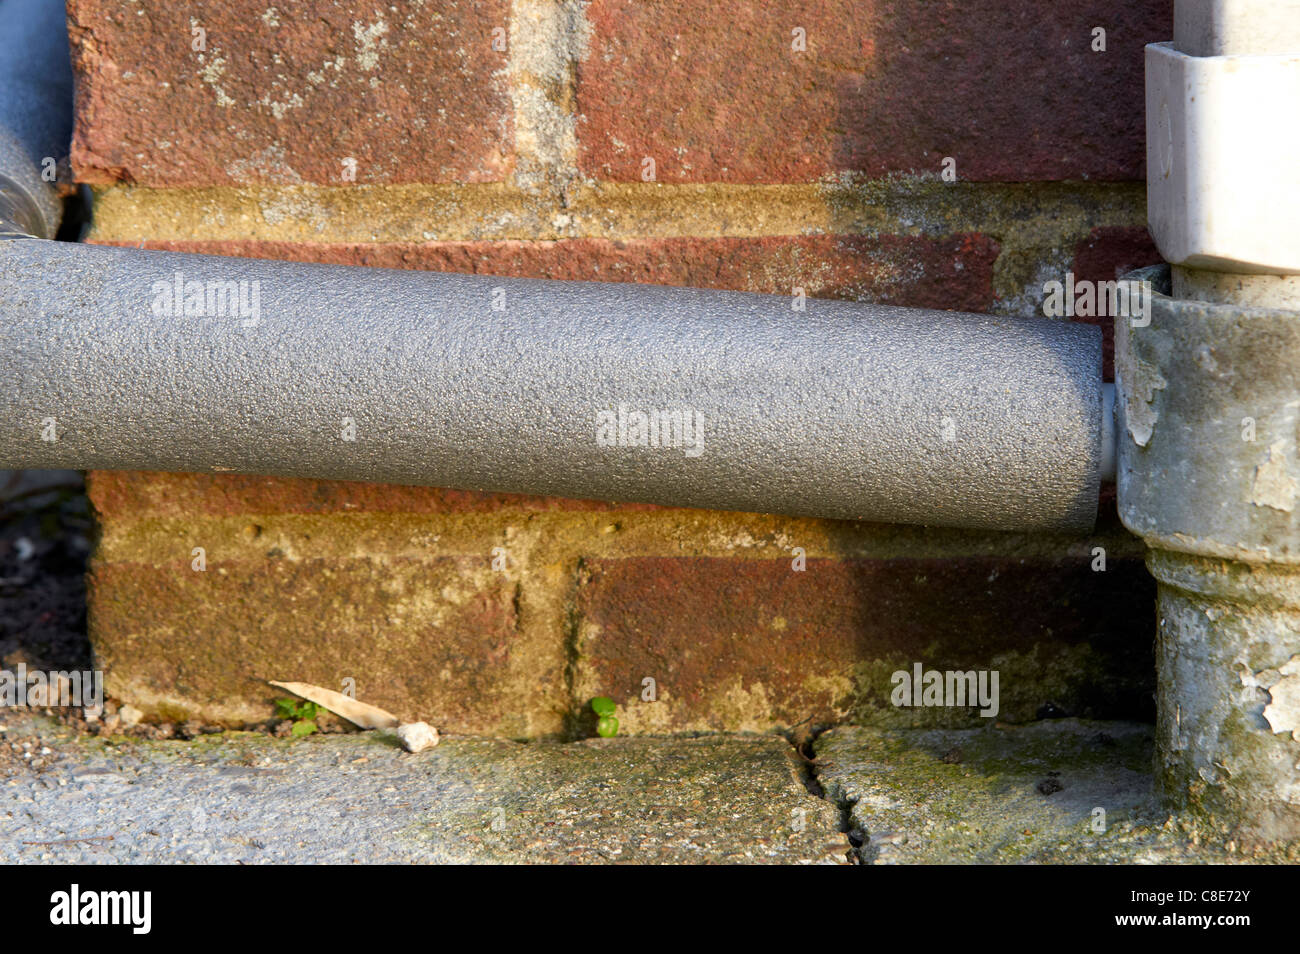 Kondensat-Rohr aus einem Brennwertkessel hinterher, um das Rohr in kalte Winterbedingungen Einfrieren zu verhindern. Stockfoto